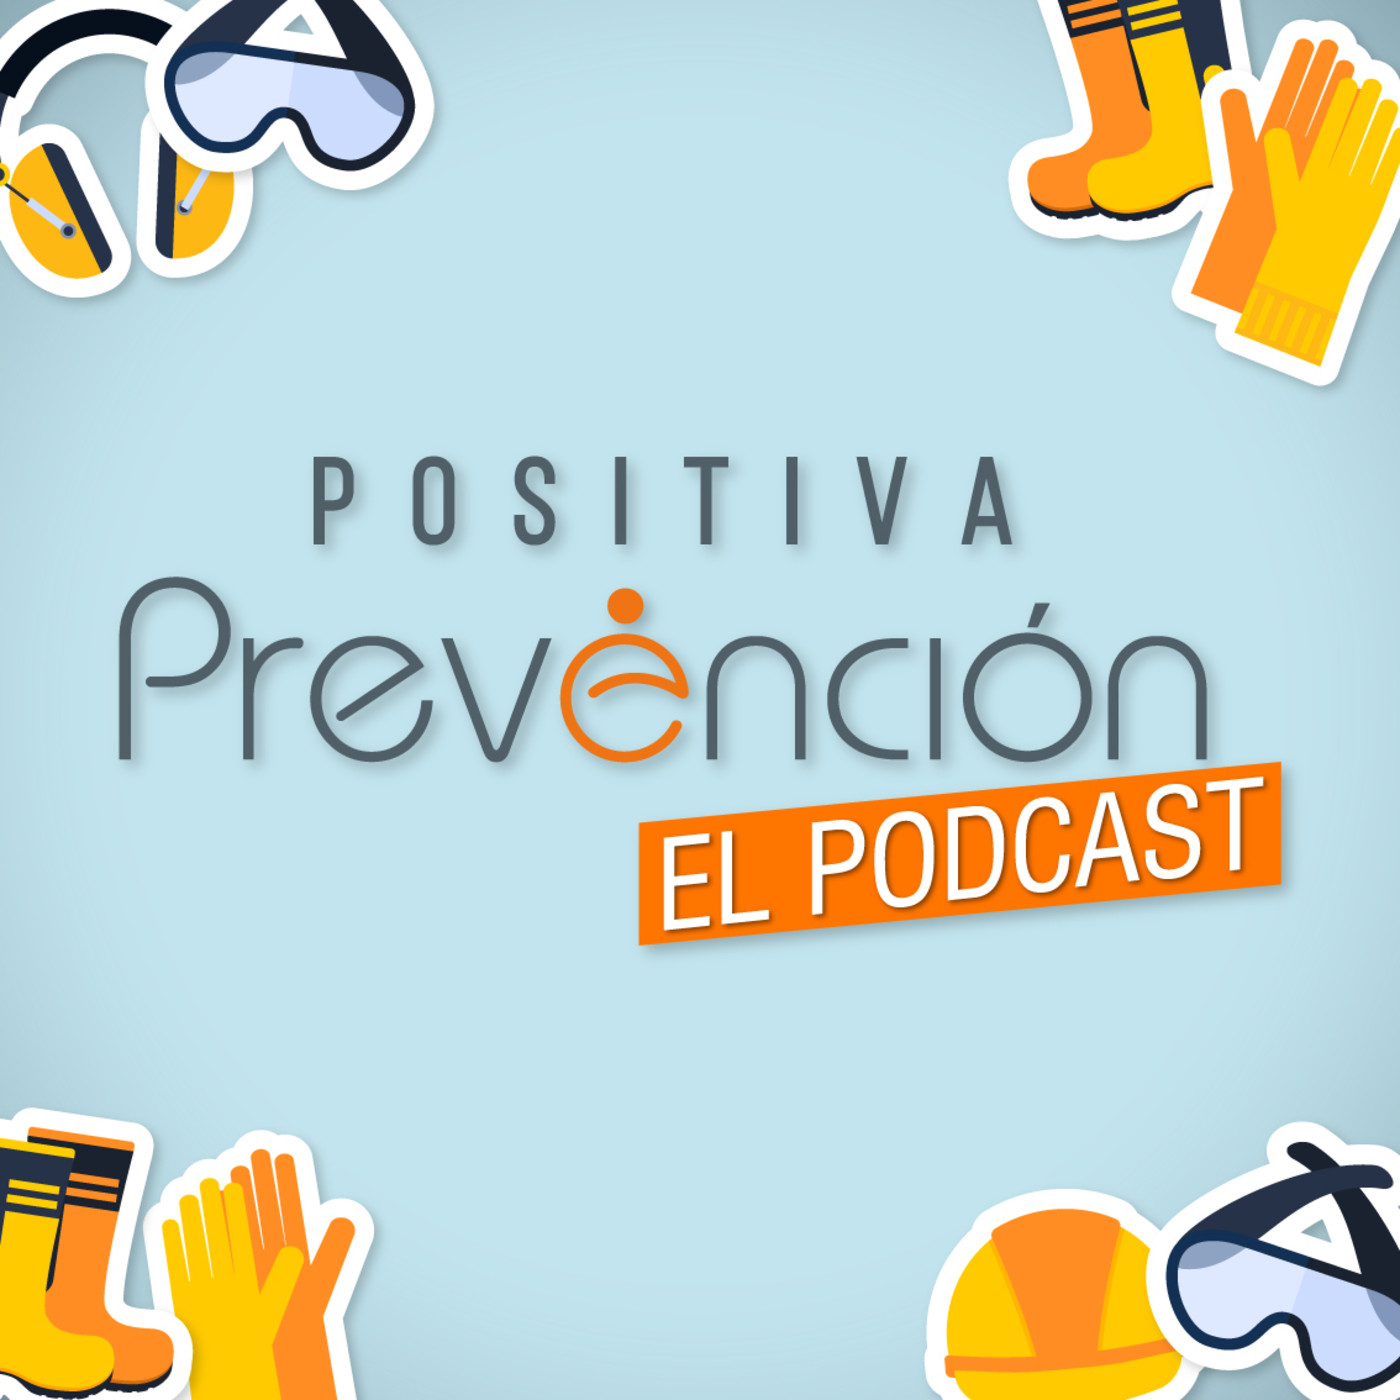 Positiva Prevención El Podcast